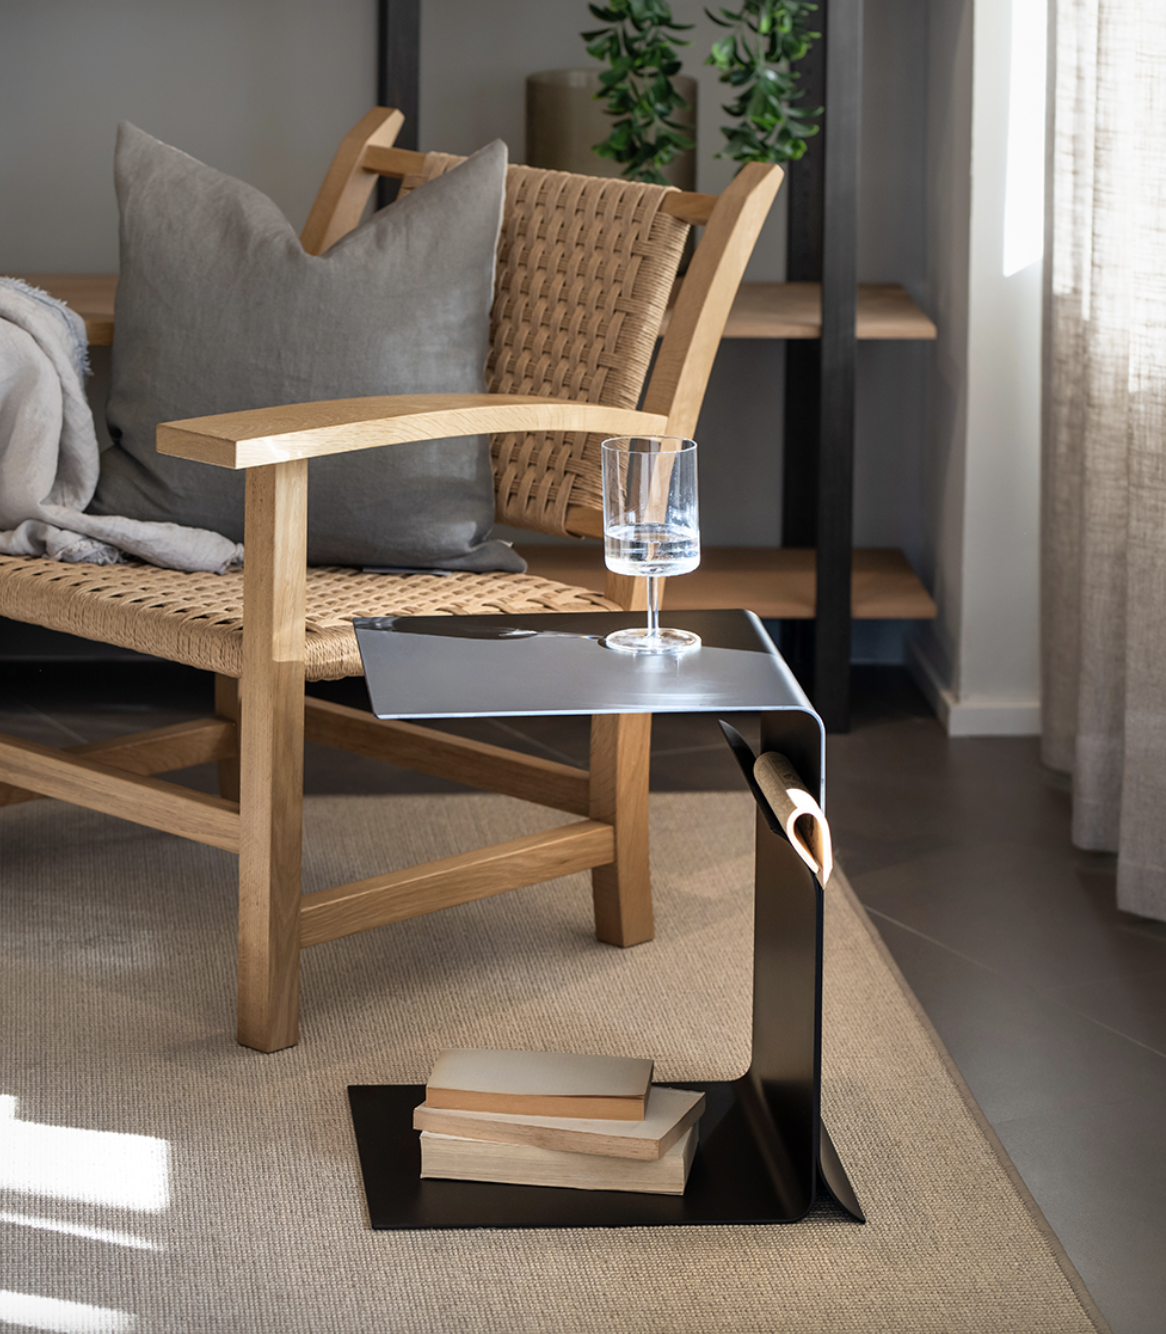 La mesa auxiliar de metal Coma luce un diseño versátil con tres tipos de posiciones diferentes para adaptarse a cada necesidad y espacio 